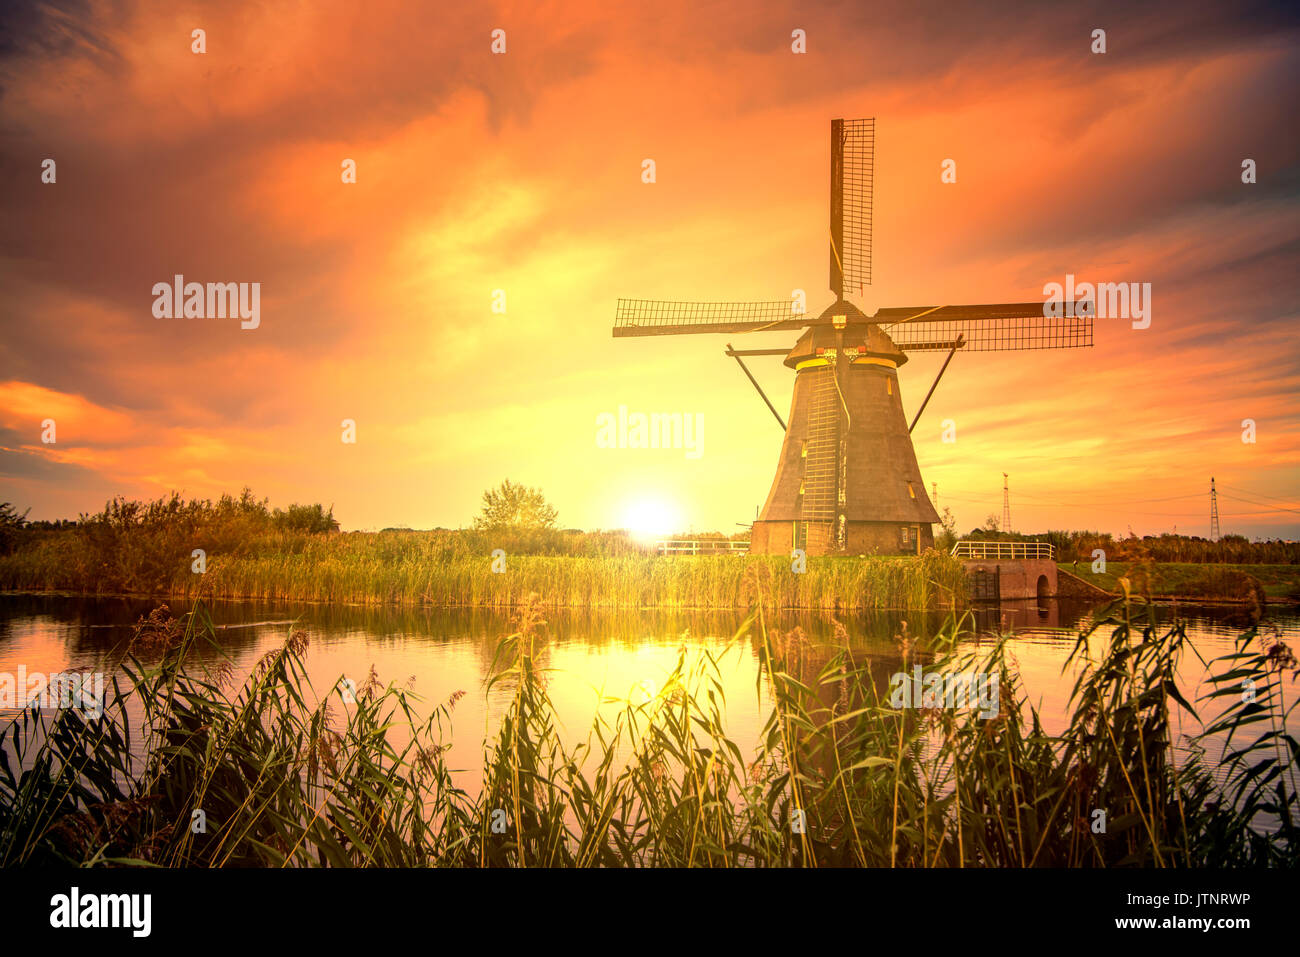 Sonnenaufgang auf dem kinderdijk Windmühle, das Unesco Welterbe Denkmäler in alblasserdam, süd-westlich von Rotterdam, Niederlande Stockfoto